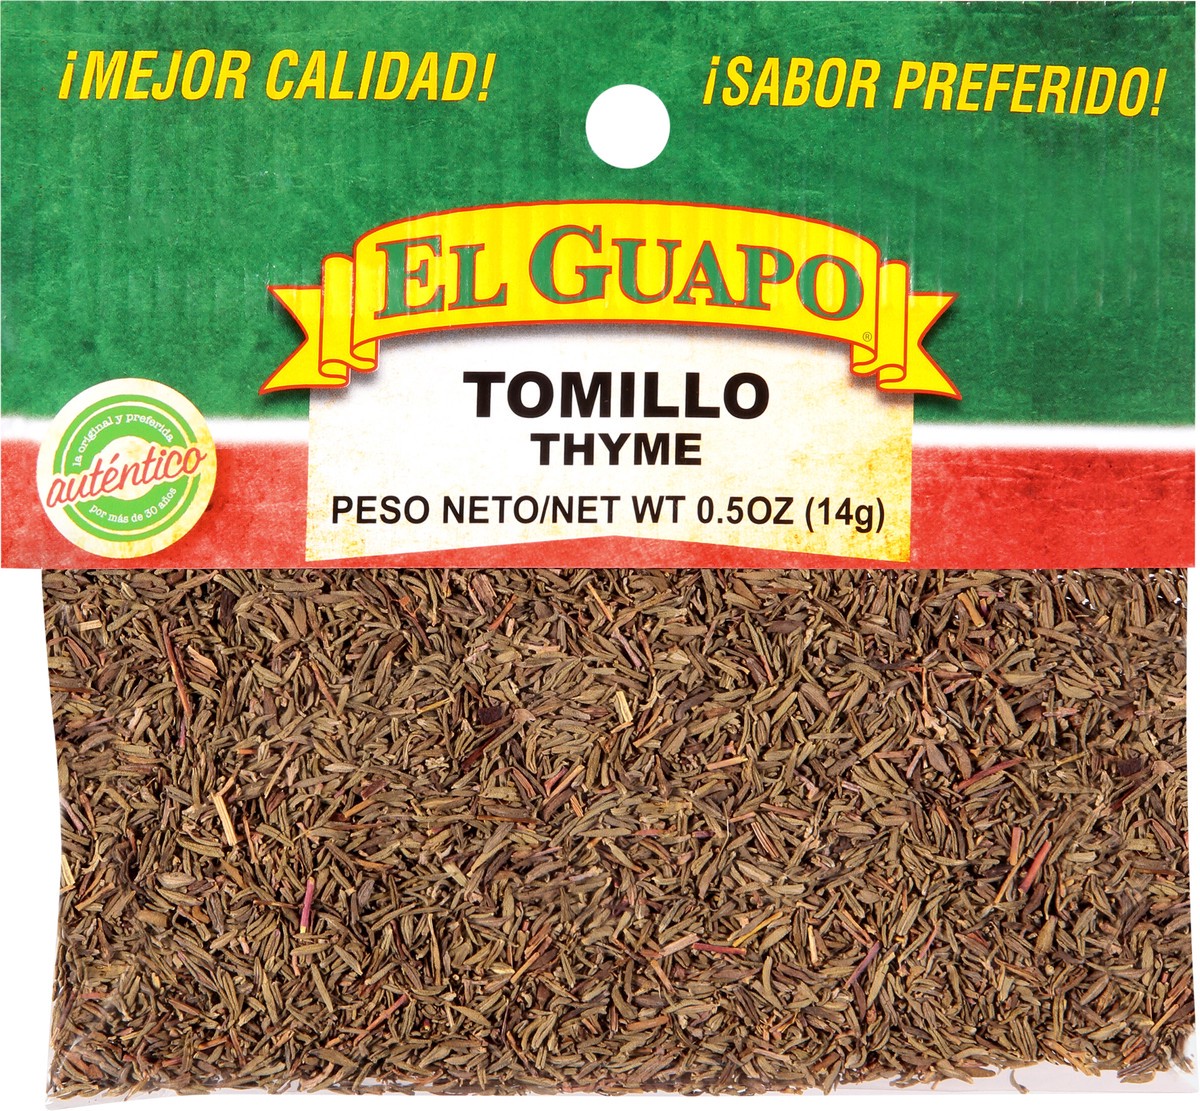 slide 6 of 7, El Guapo Thyme (Tomillo), 0.5 oz, 0.5 oz